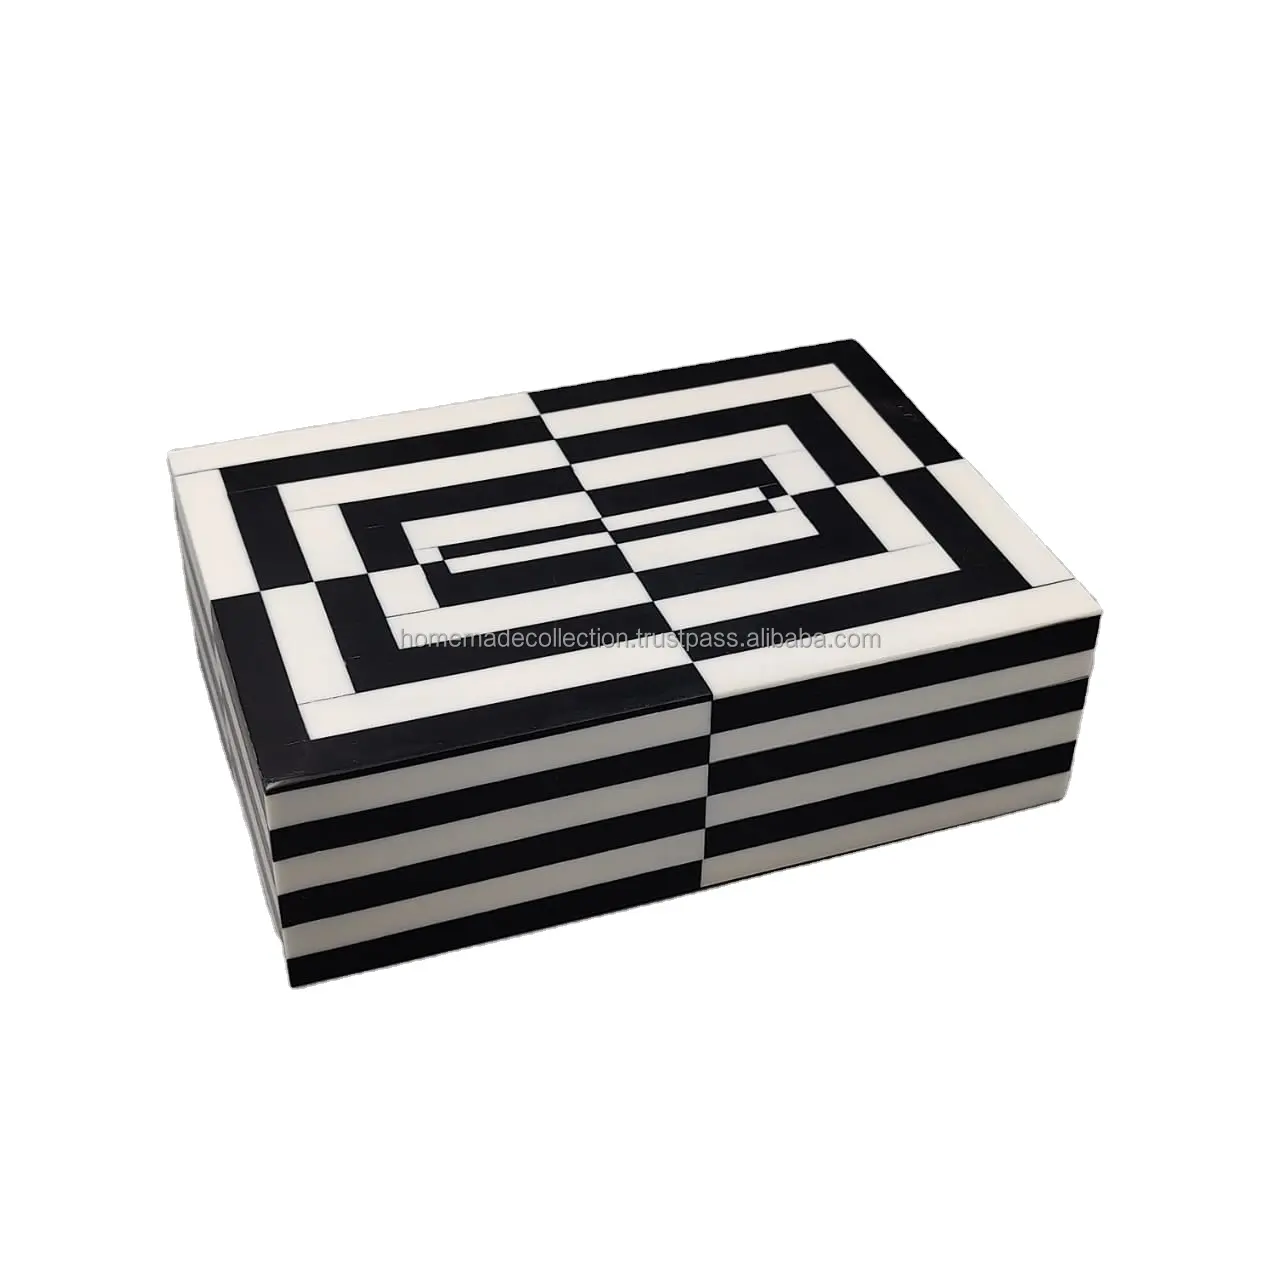 El yapımı reçine çizgili kutu beyaz ve siyah çizgili reçine kutu dikdörtgen şekli en kaliteli